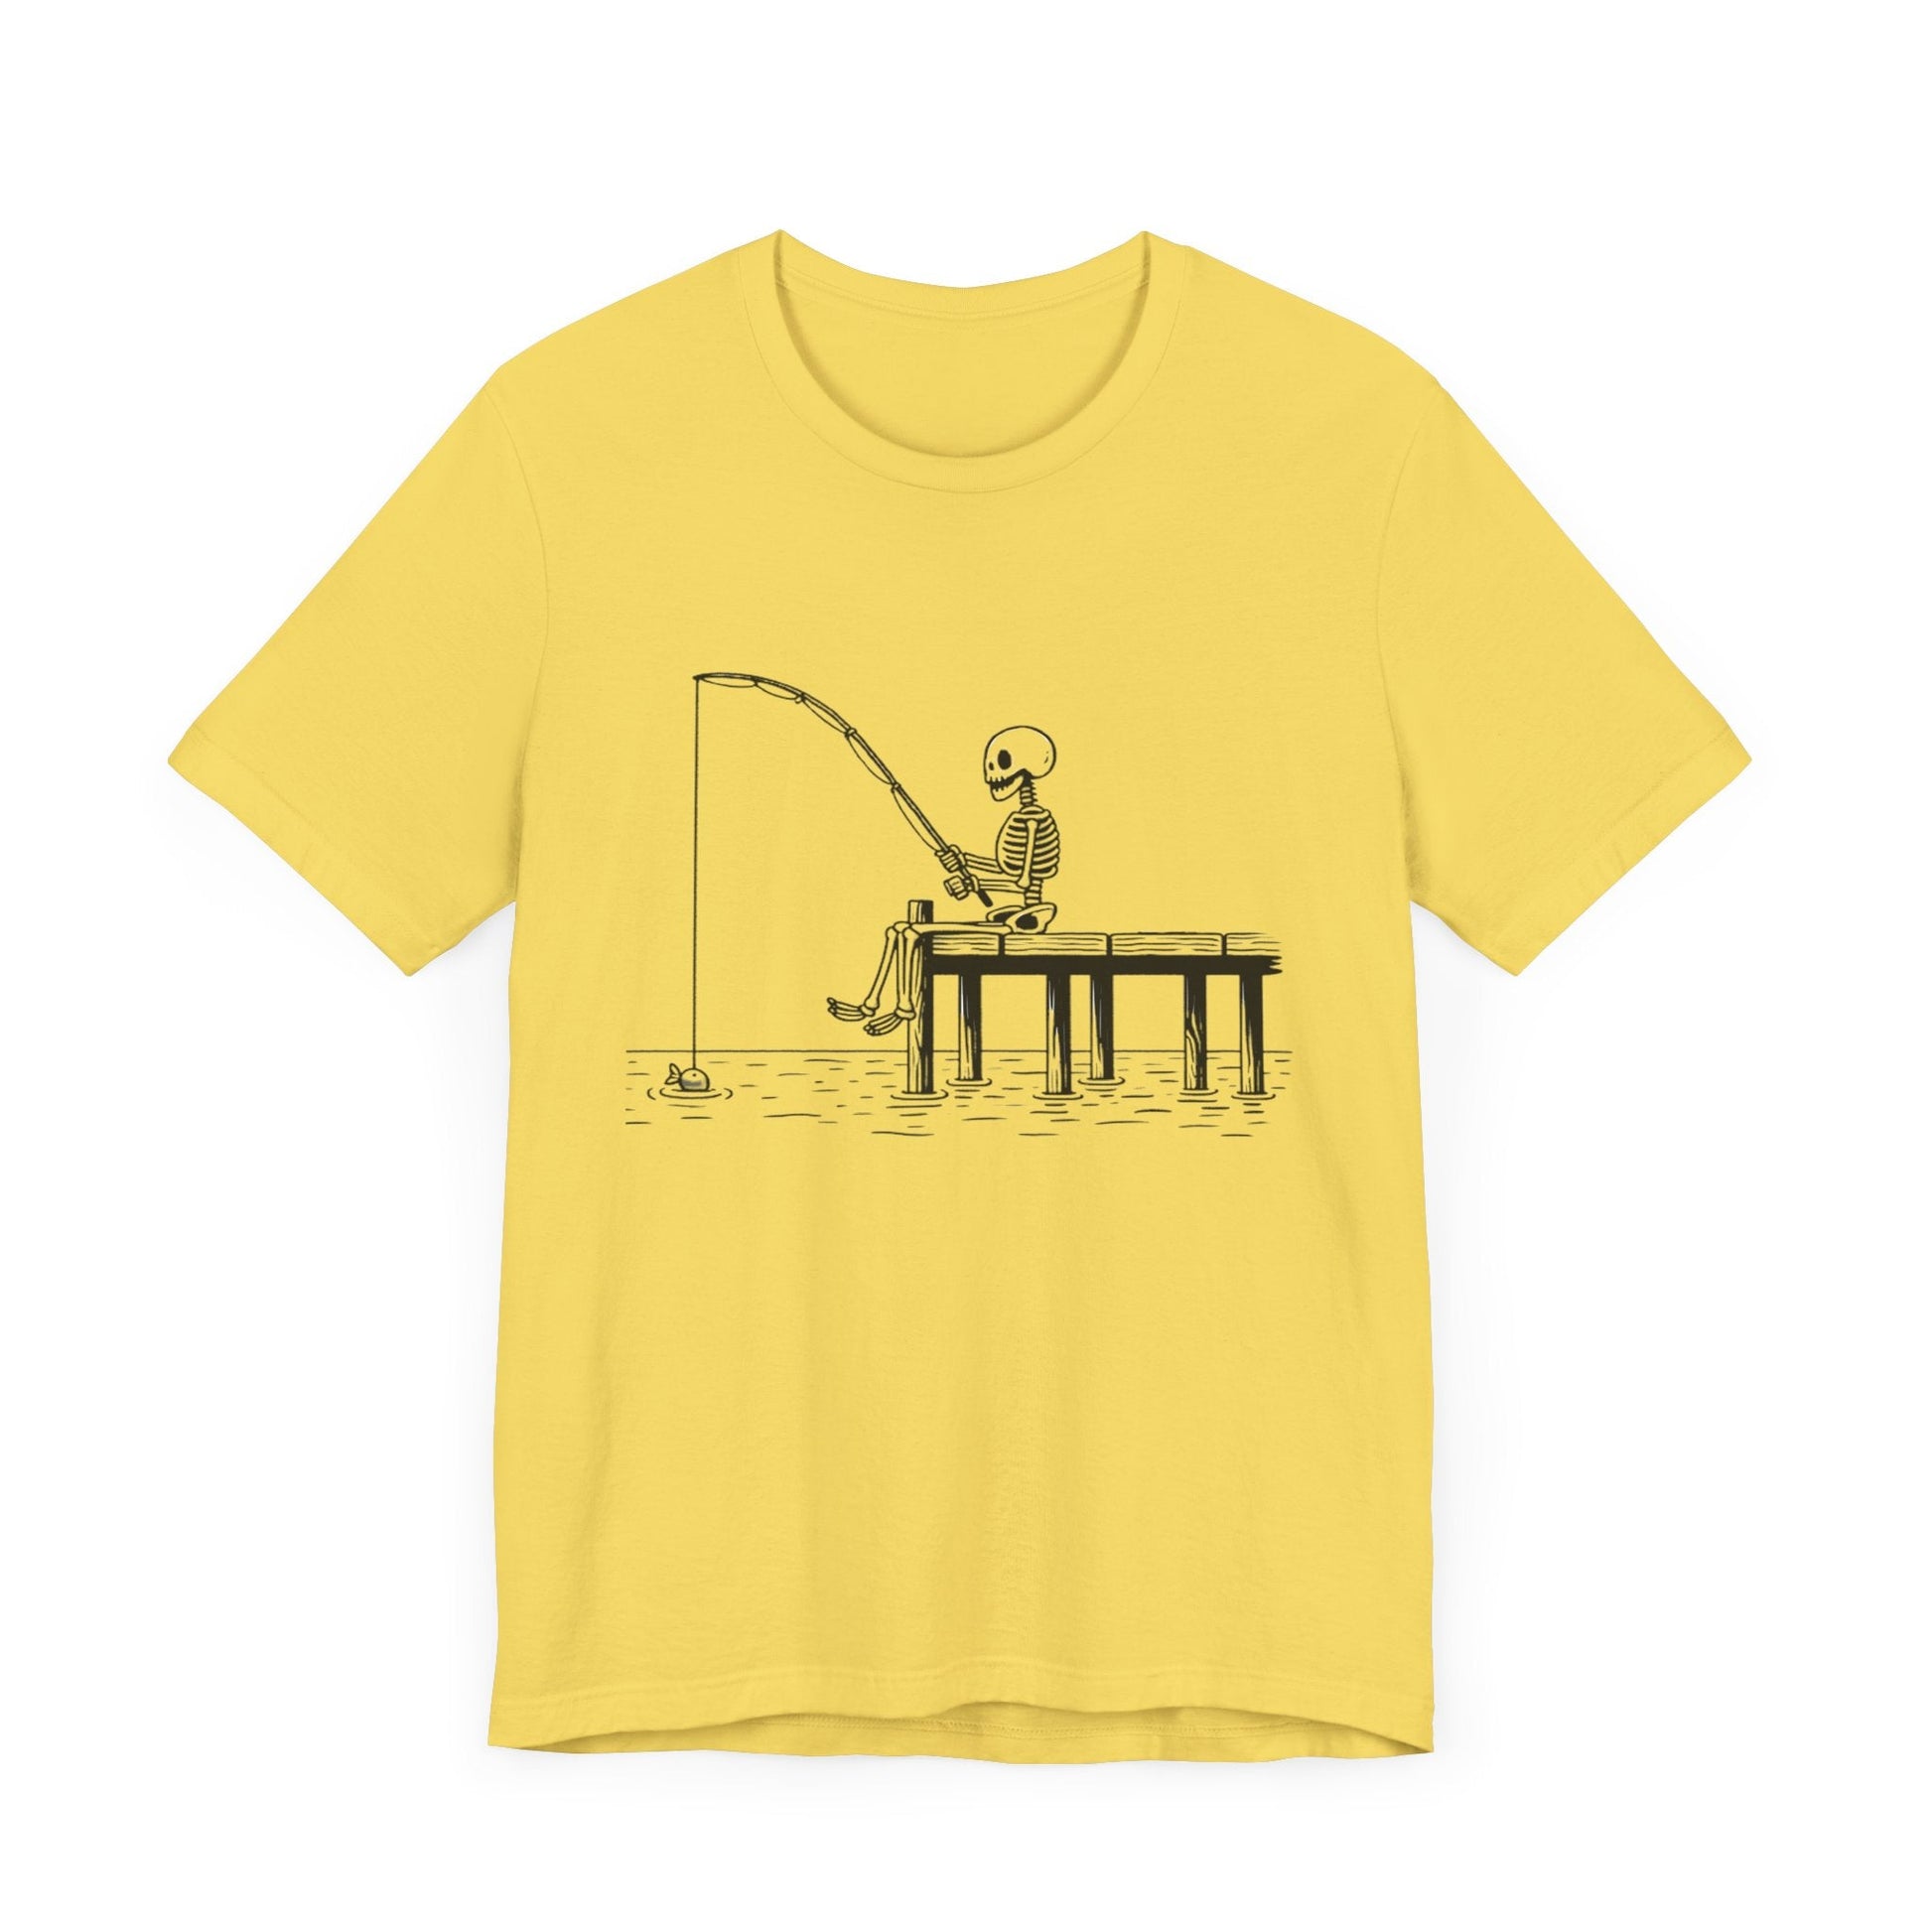 Skeleton Fishing Short Sleeve Tee ShirtT - ShirtVTZdesignsMaize YellowXSclothingCottonCrew neck